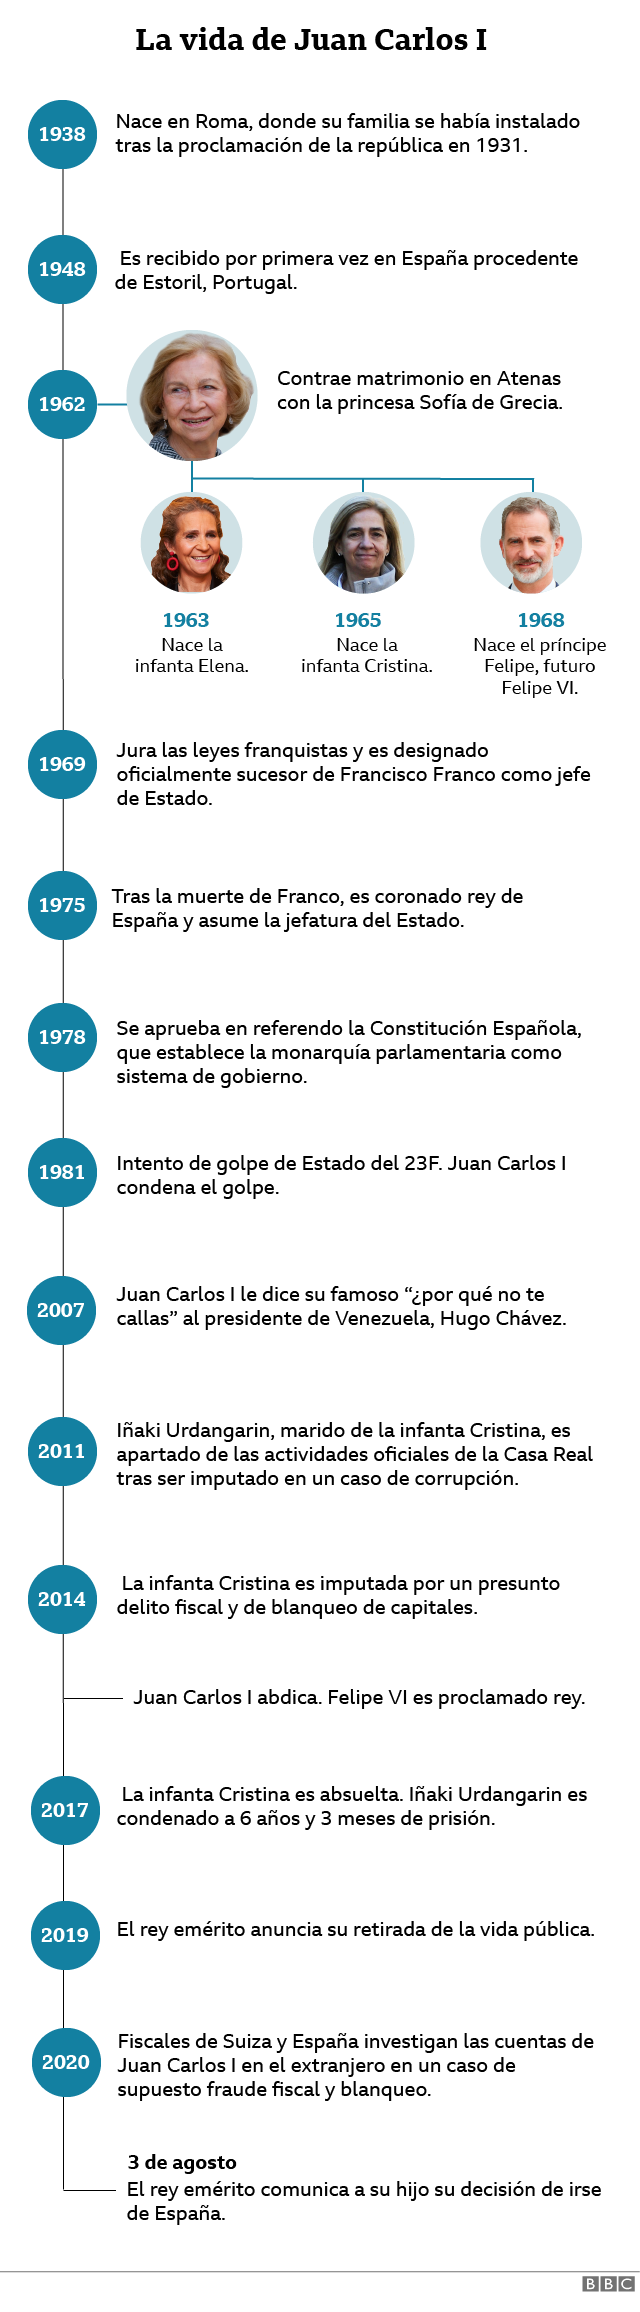 Cronología de la vida pública del rey emérito Juan Carlos I.